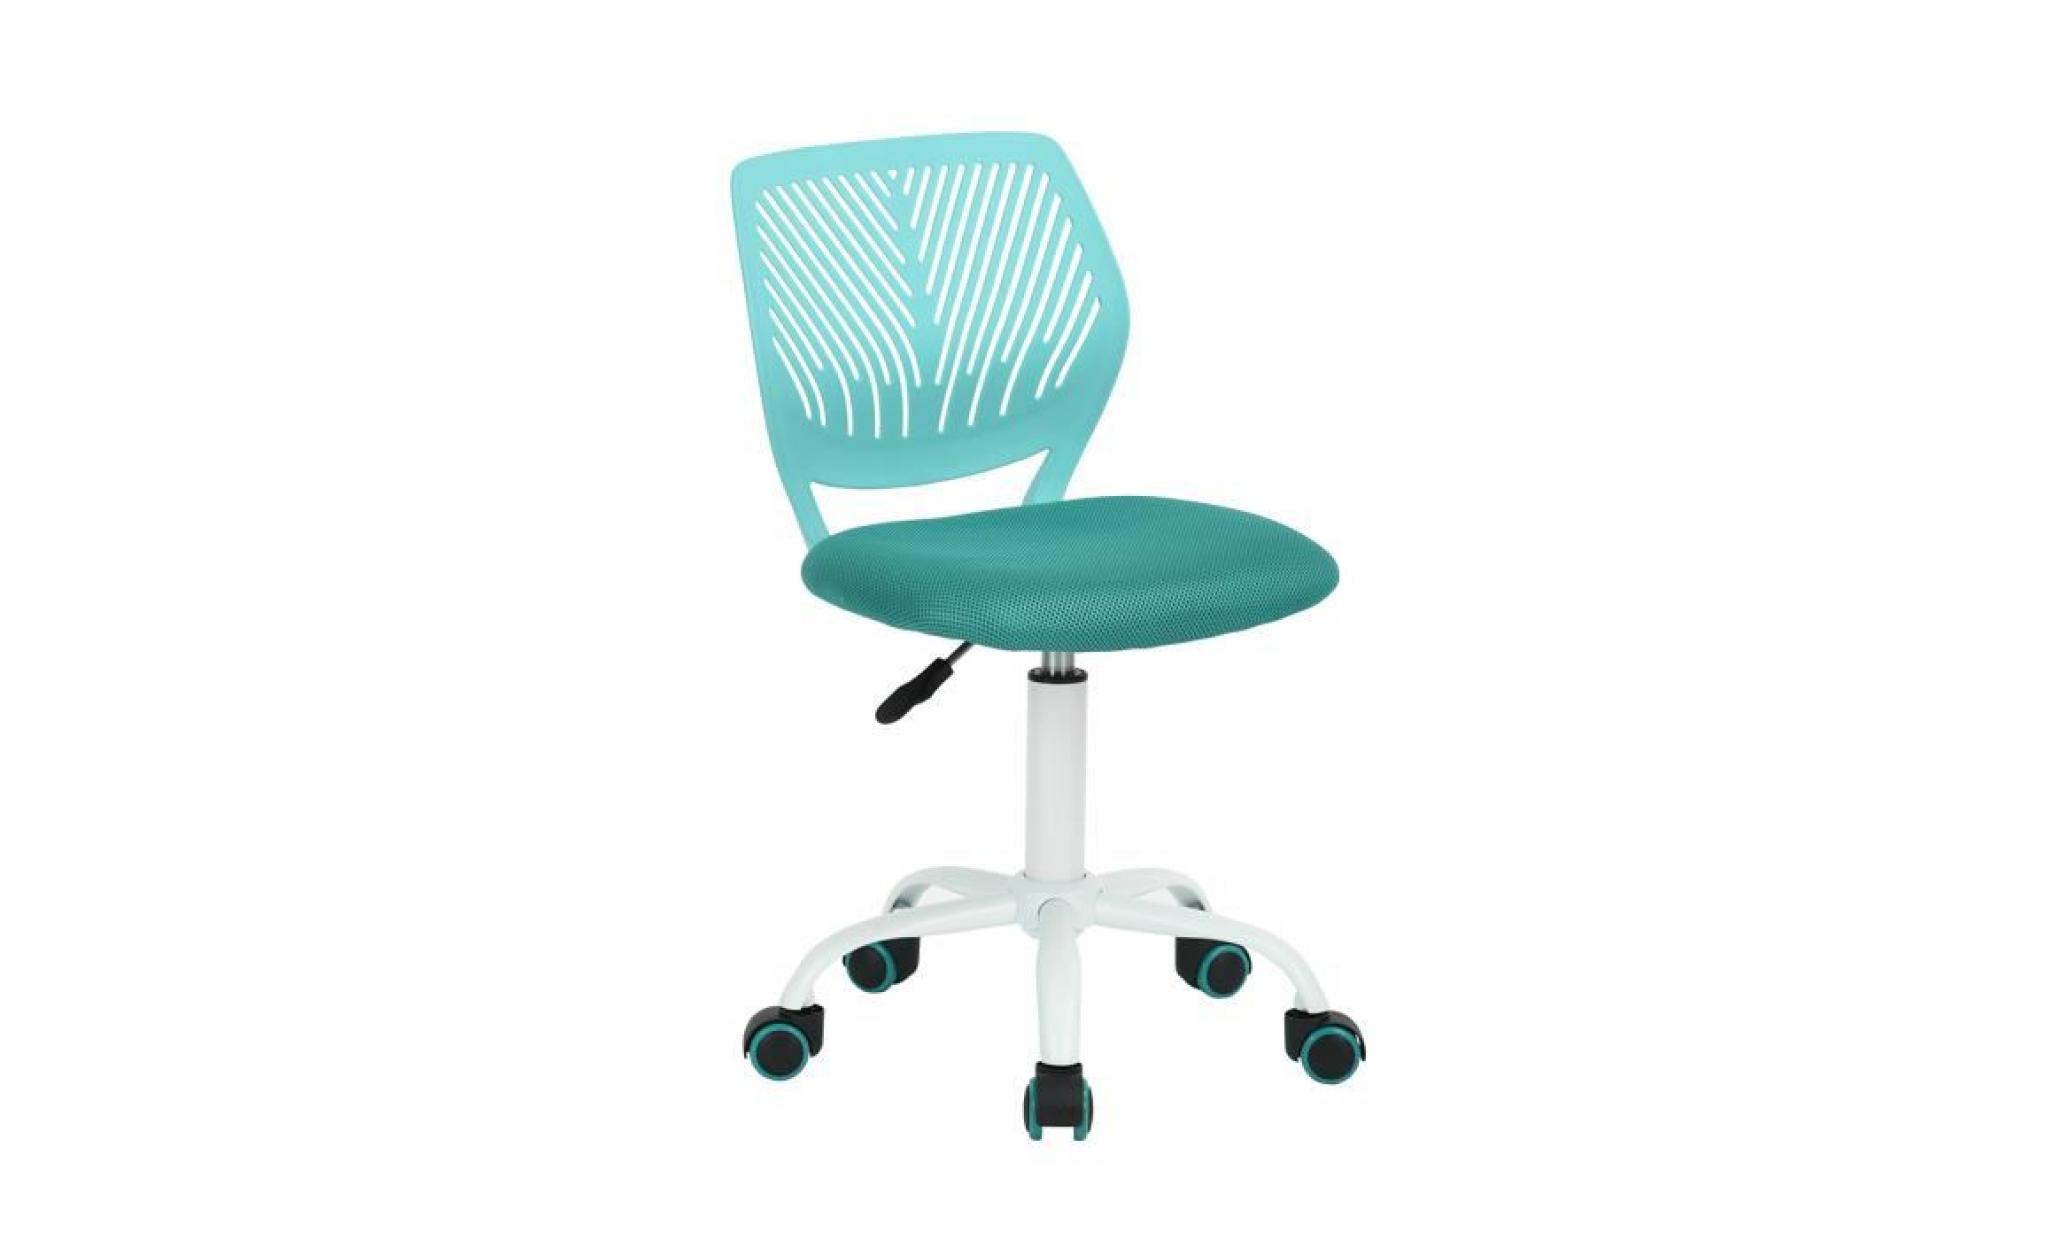 siège chaise de bureau enfant turquoise haute réglable en plastique métal eponge réseau à roulettes